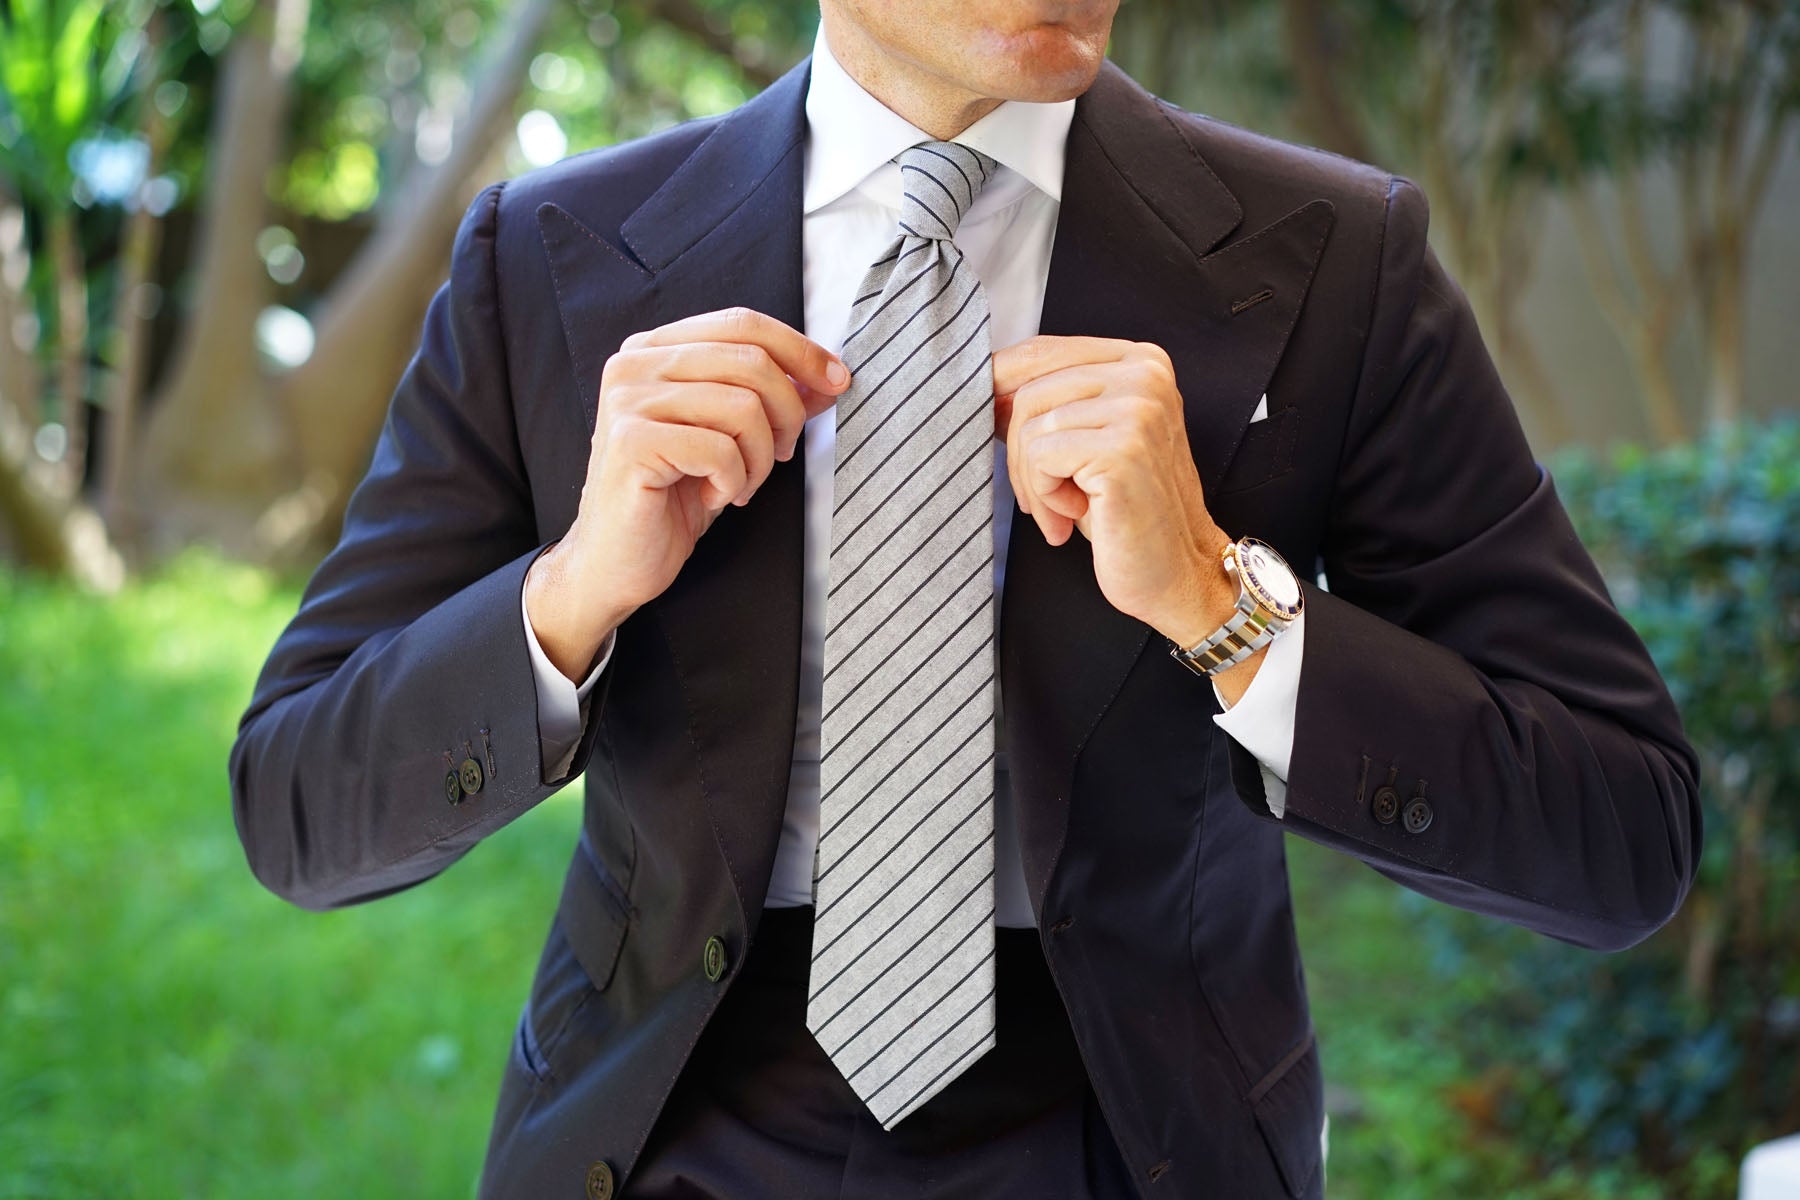 Men�'s Grey Striped Ties